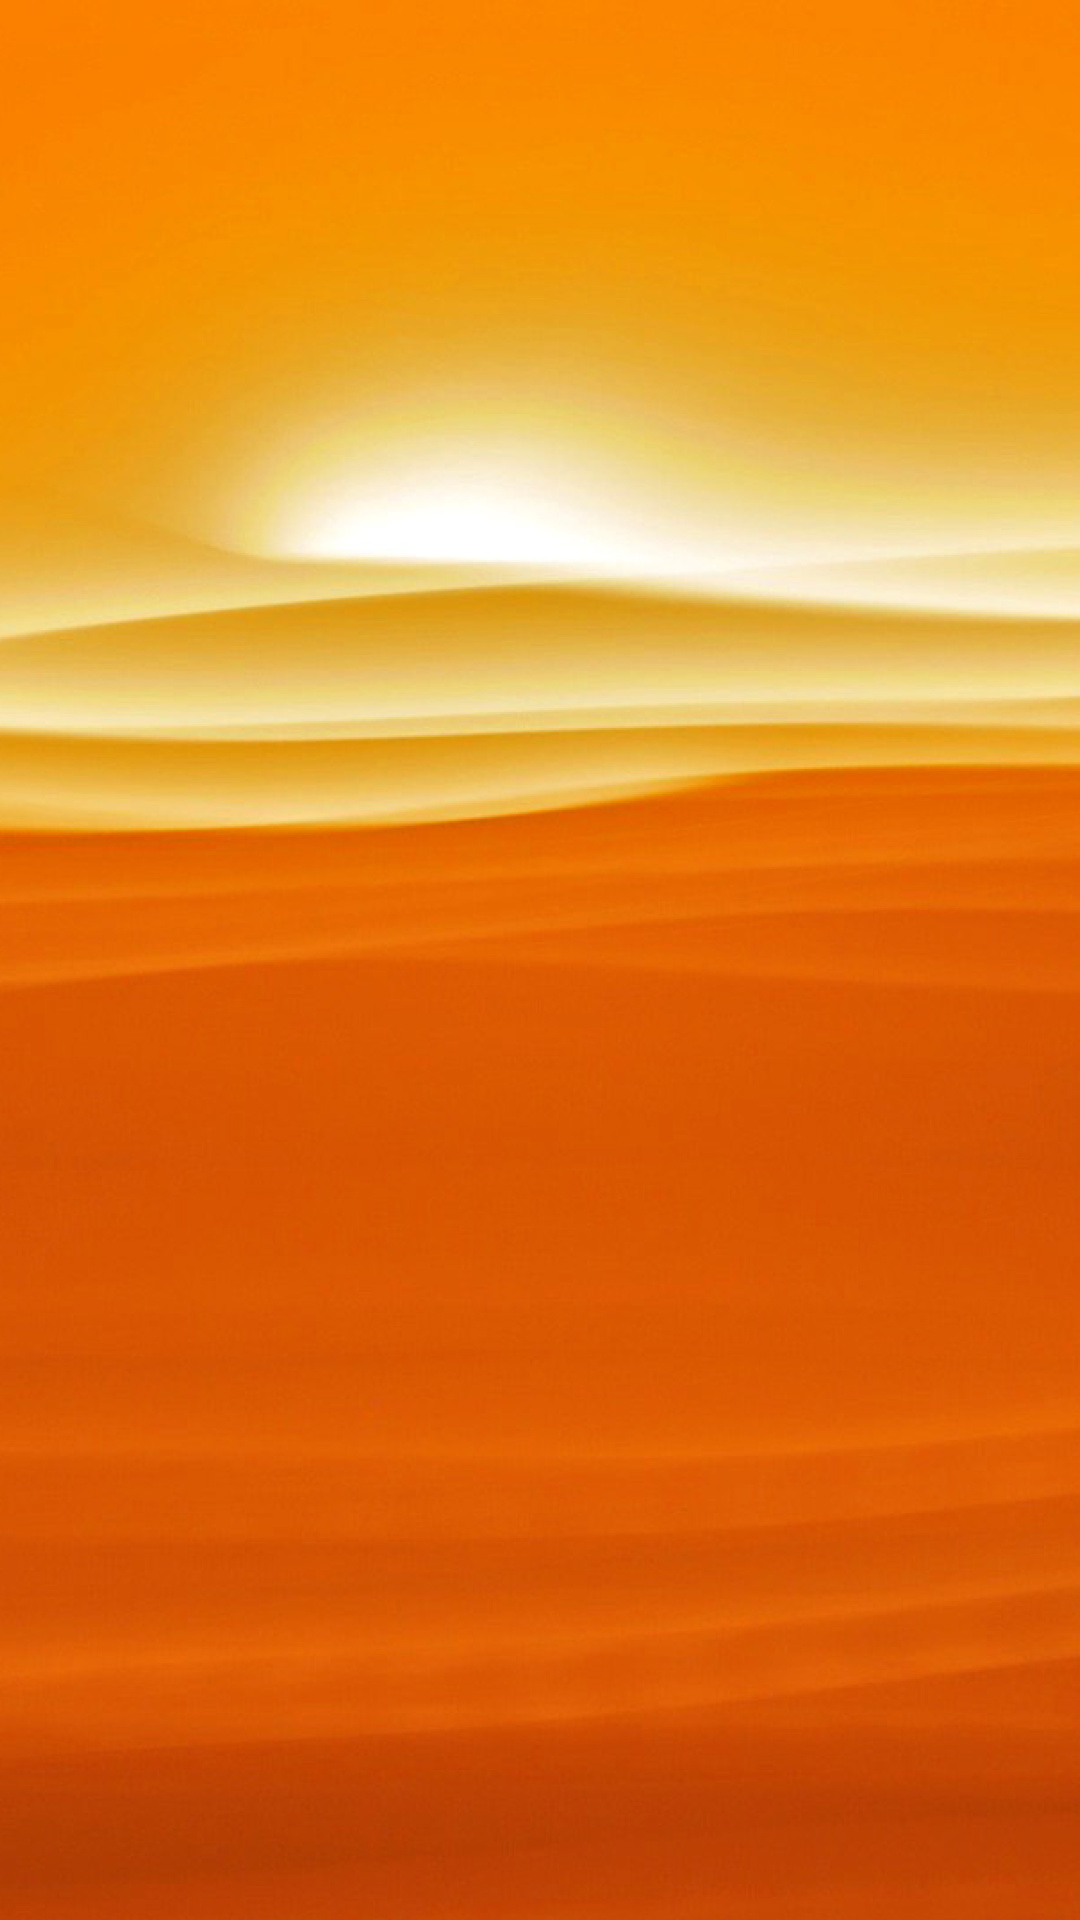 Обои Orange Sky and Desert 1080x1920